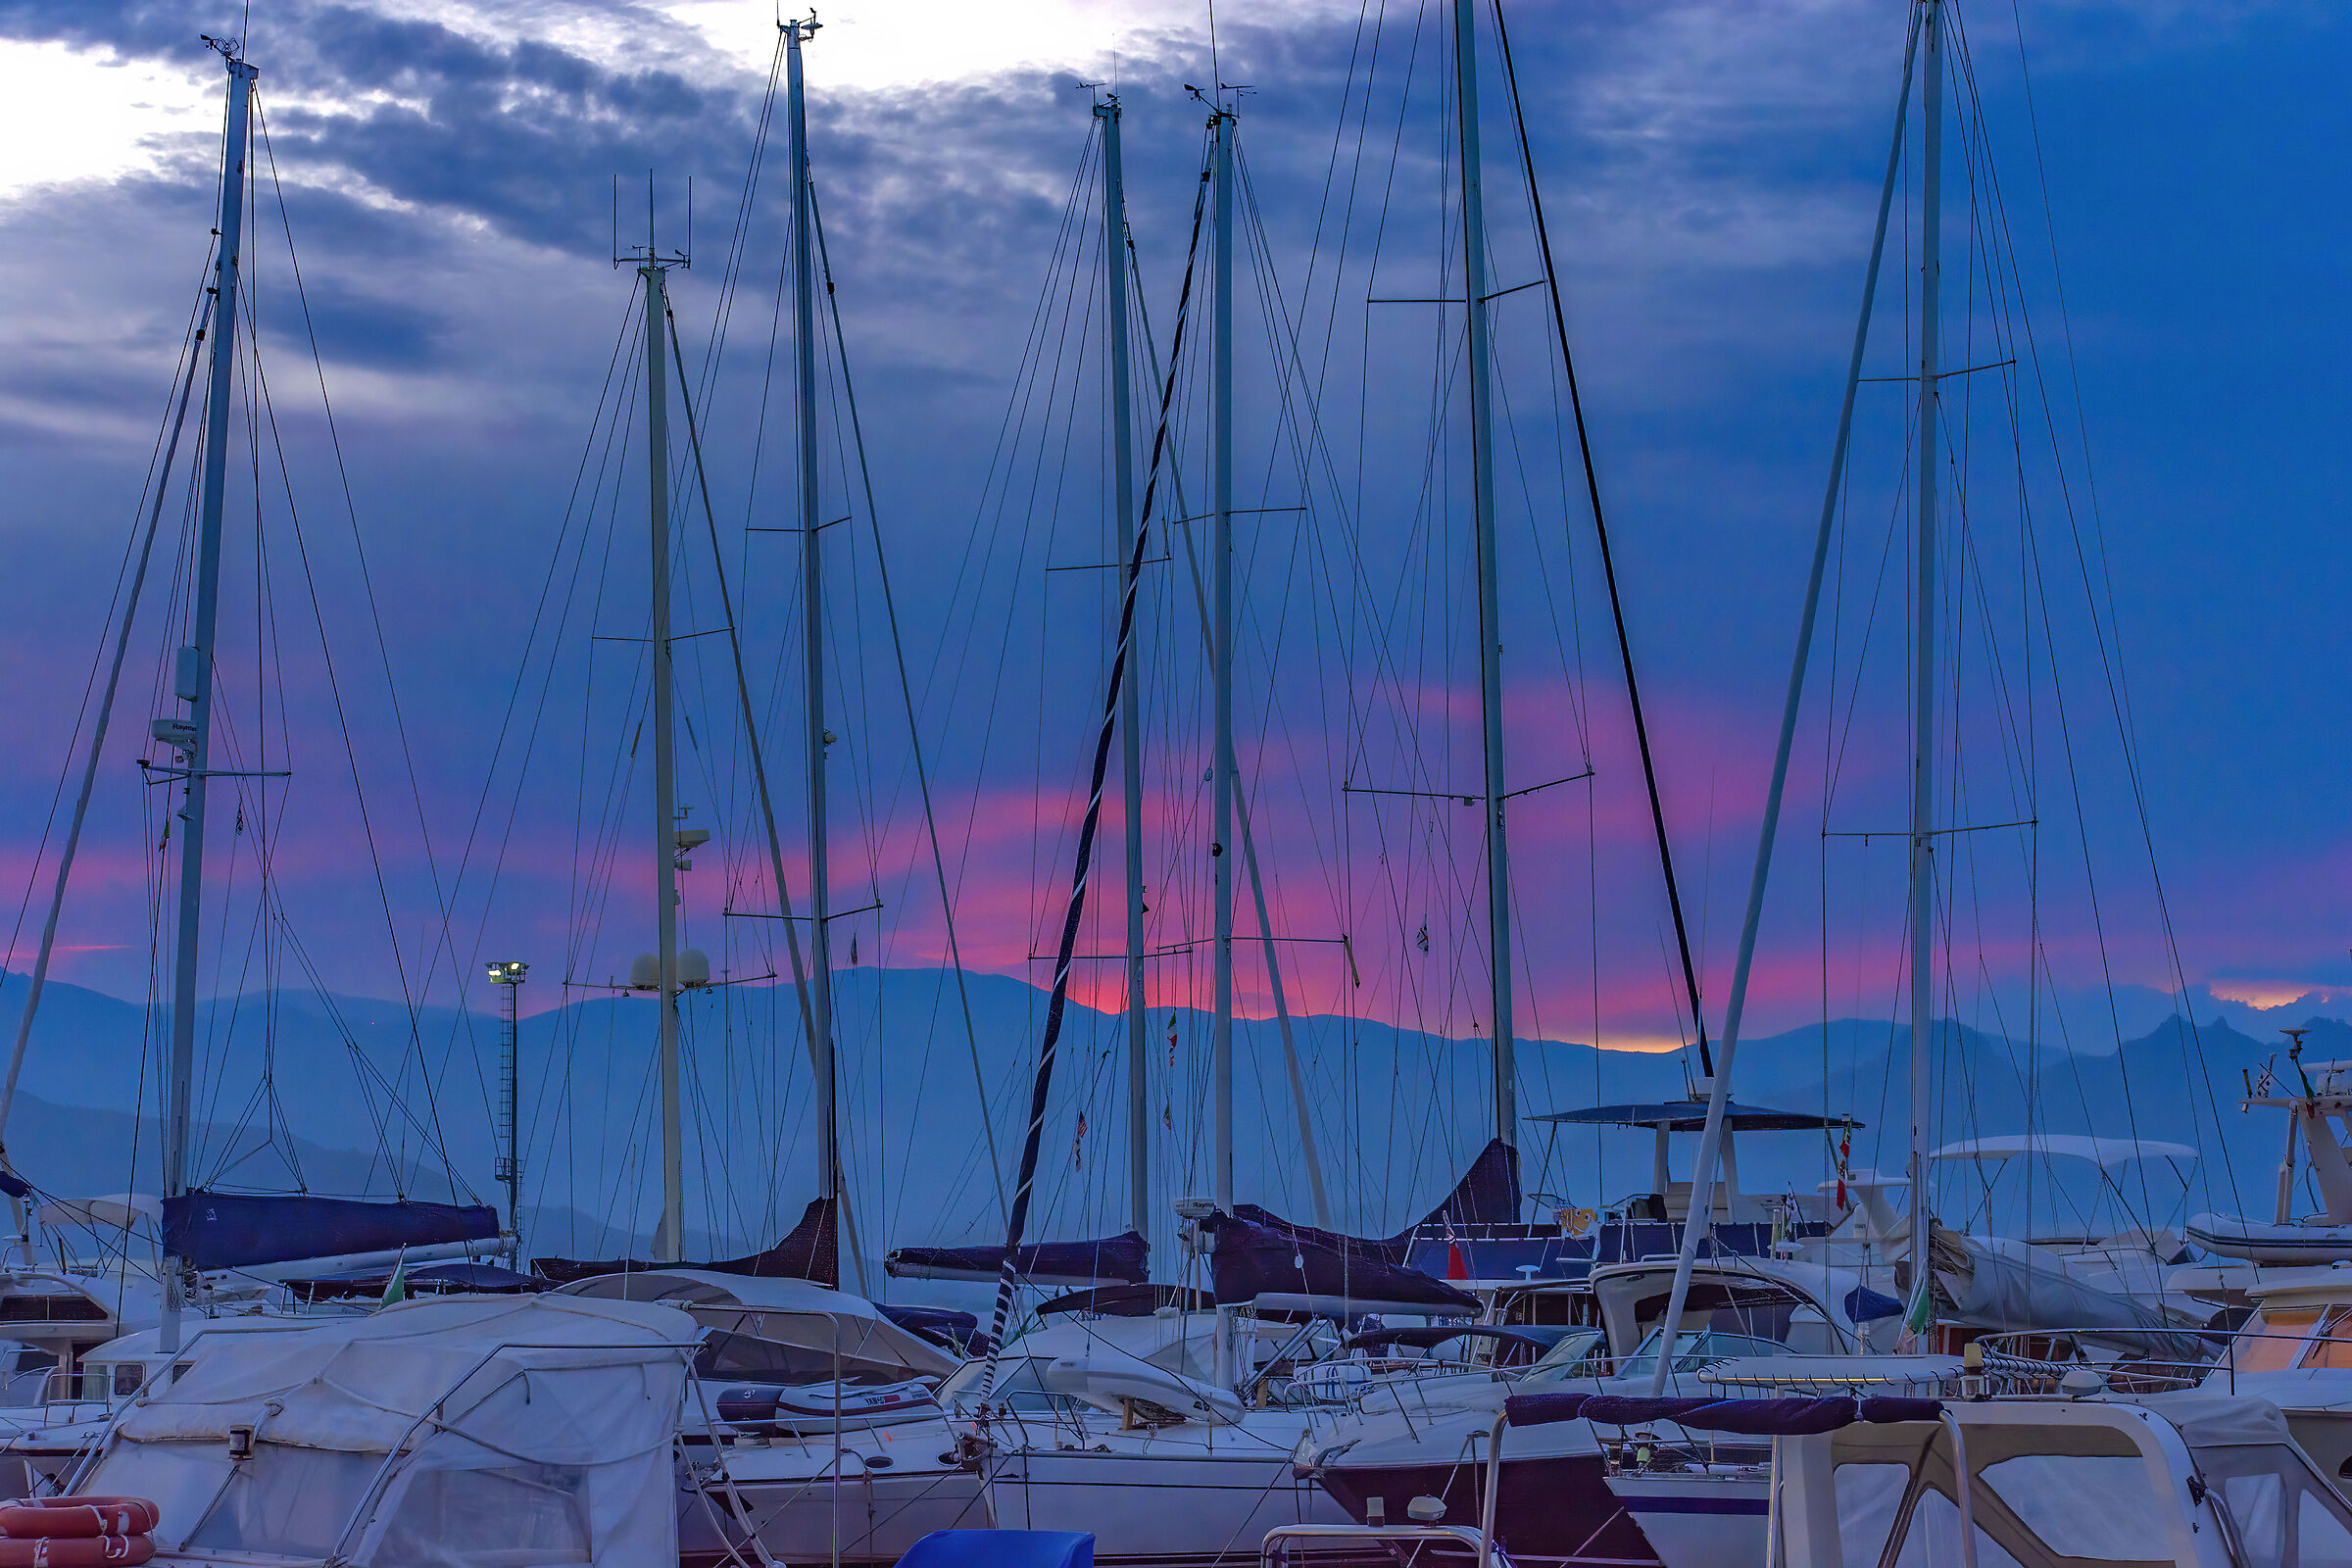 The sunset on the marina...